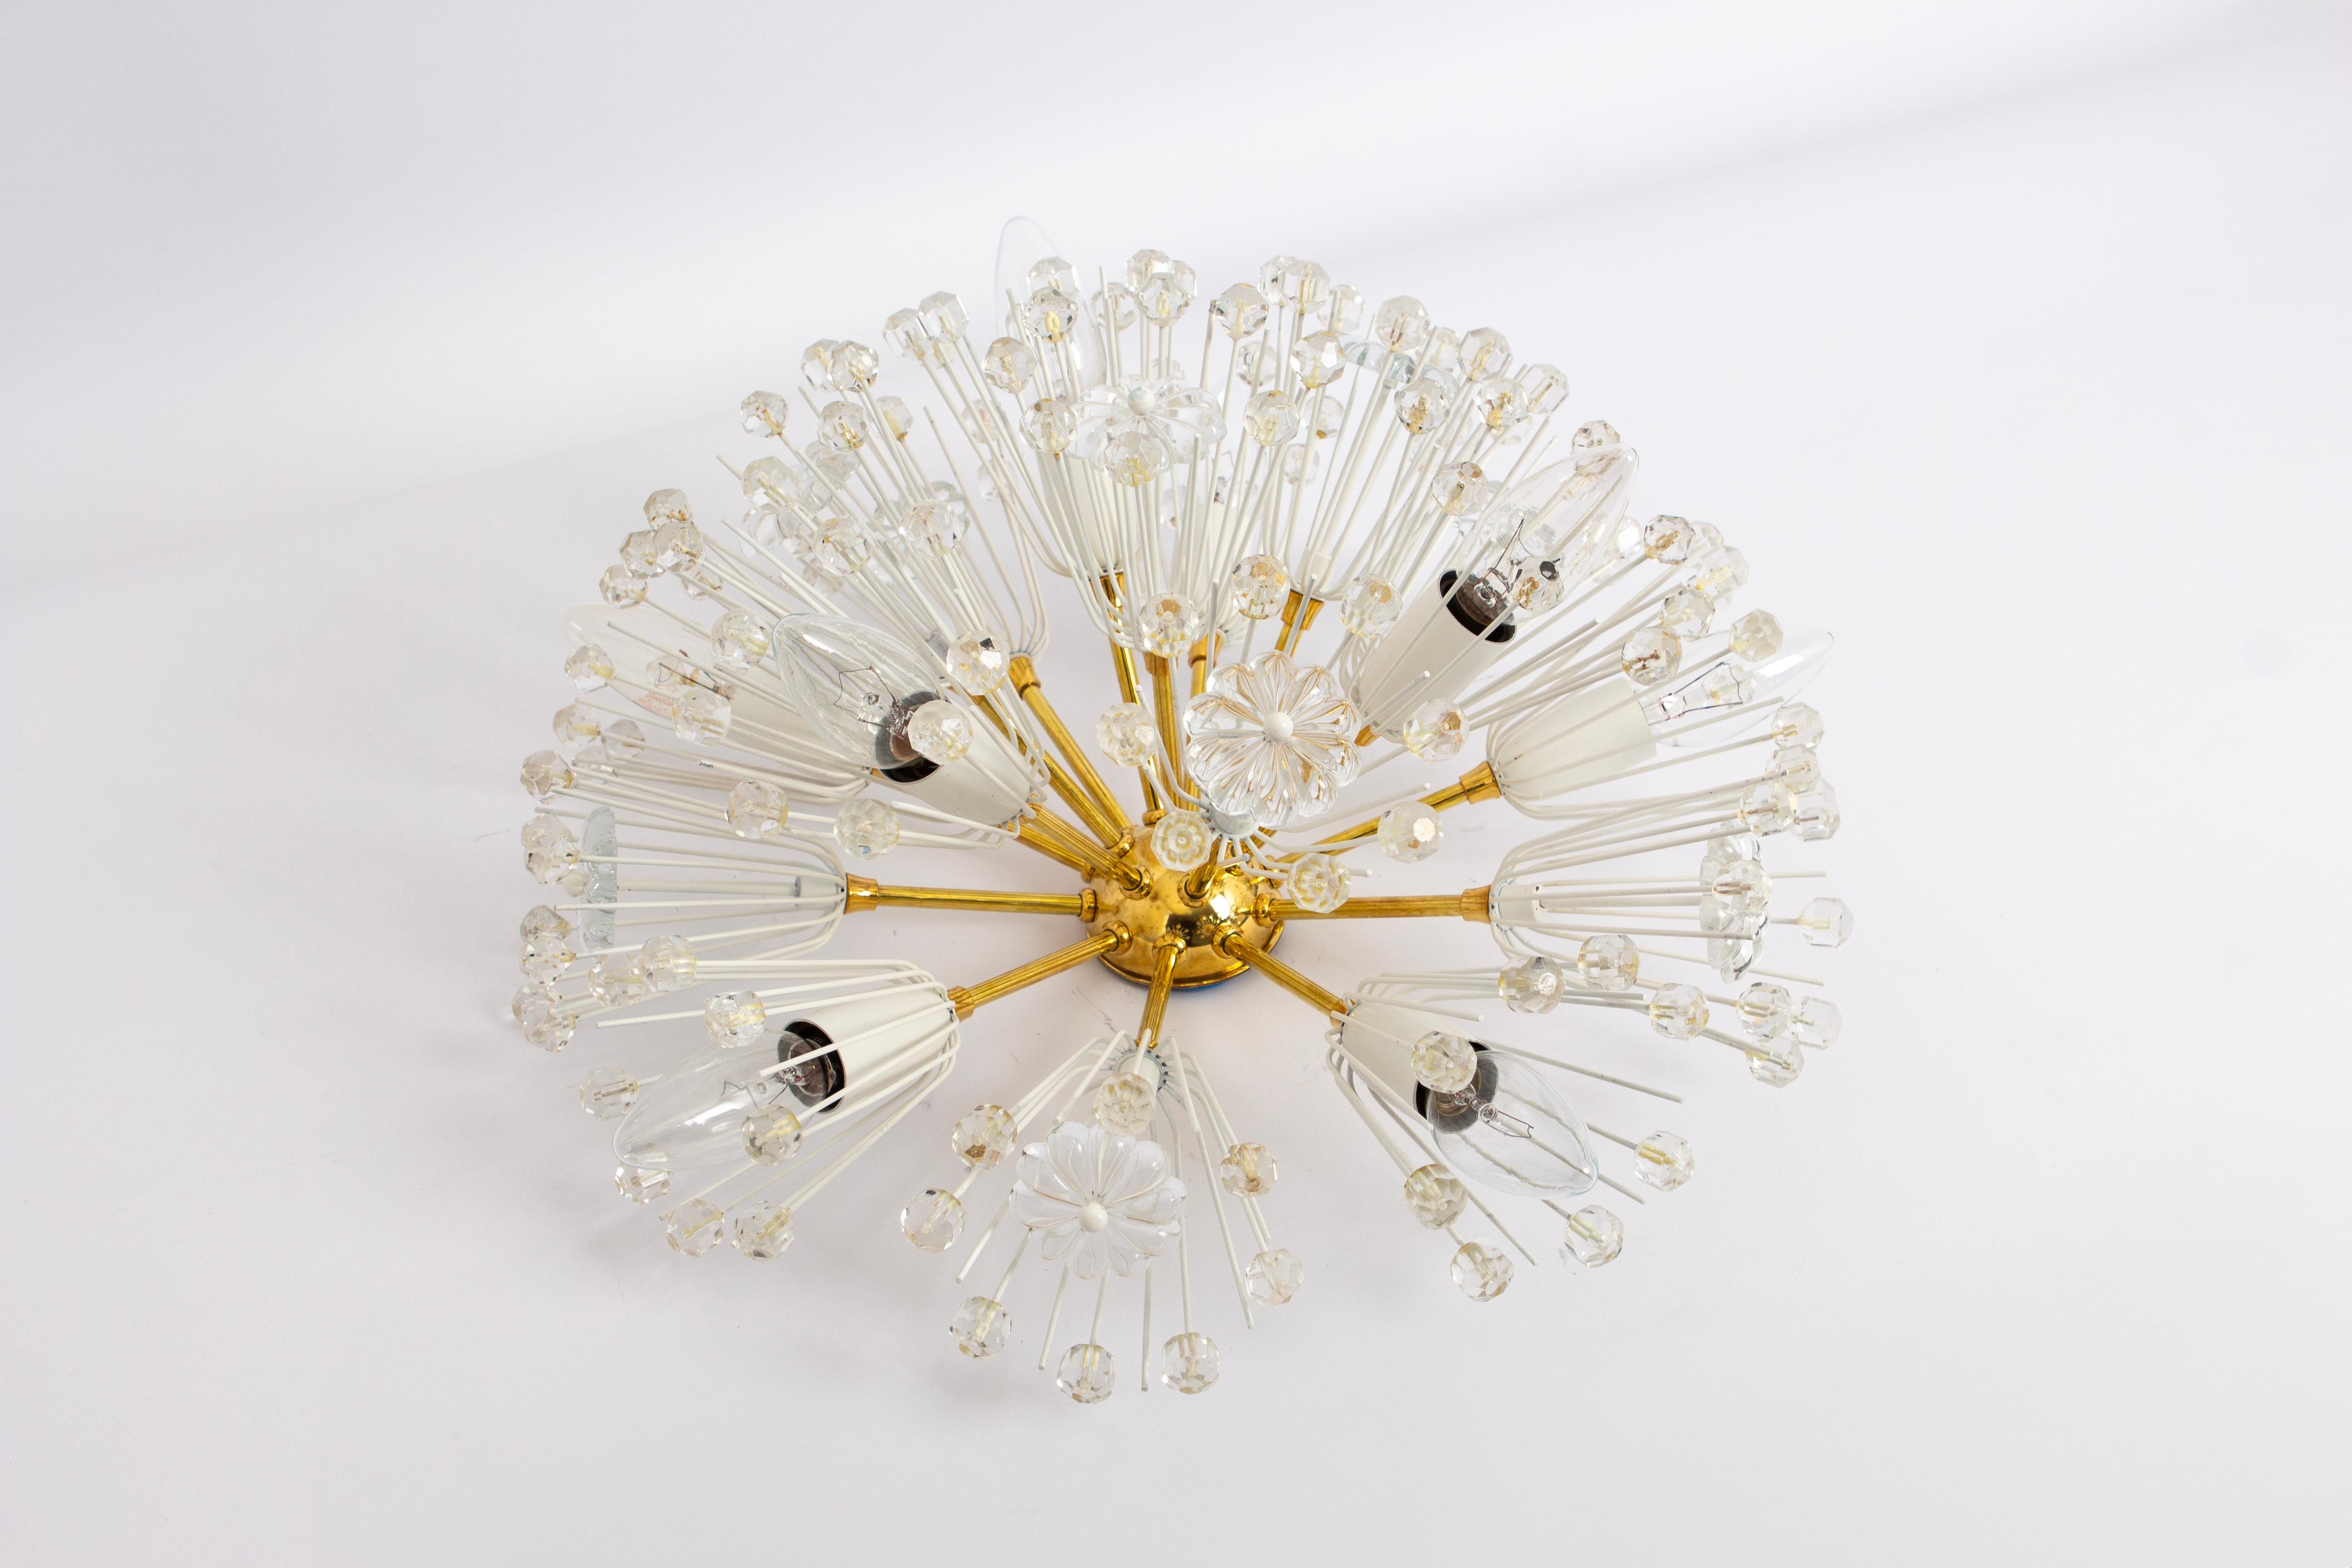 Schöne Starburst-Messinghalterung mit vielen Kristallen, entworfen von Emil Stejnar für Nikoll, hergestellt in Österreich, um die 1960er Jahre.

Schwere Qualität und in gutem Zustand mit kleinen Altersspuren.
Gereinigt, gut verkabelt und